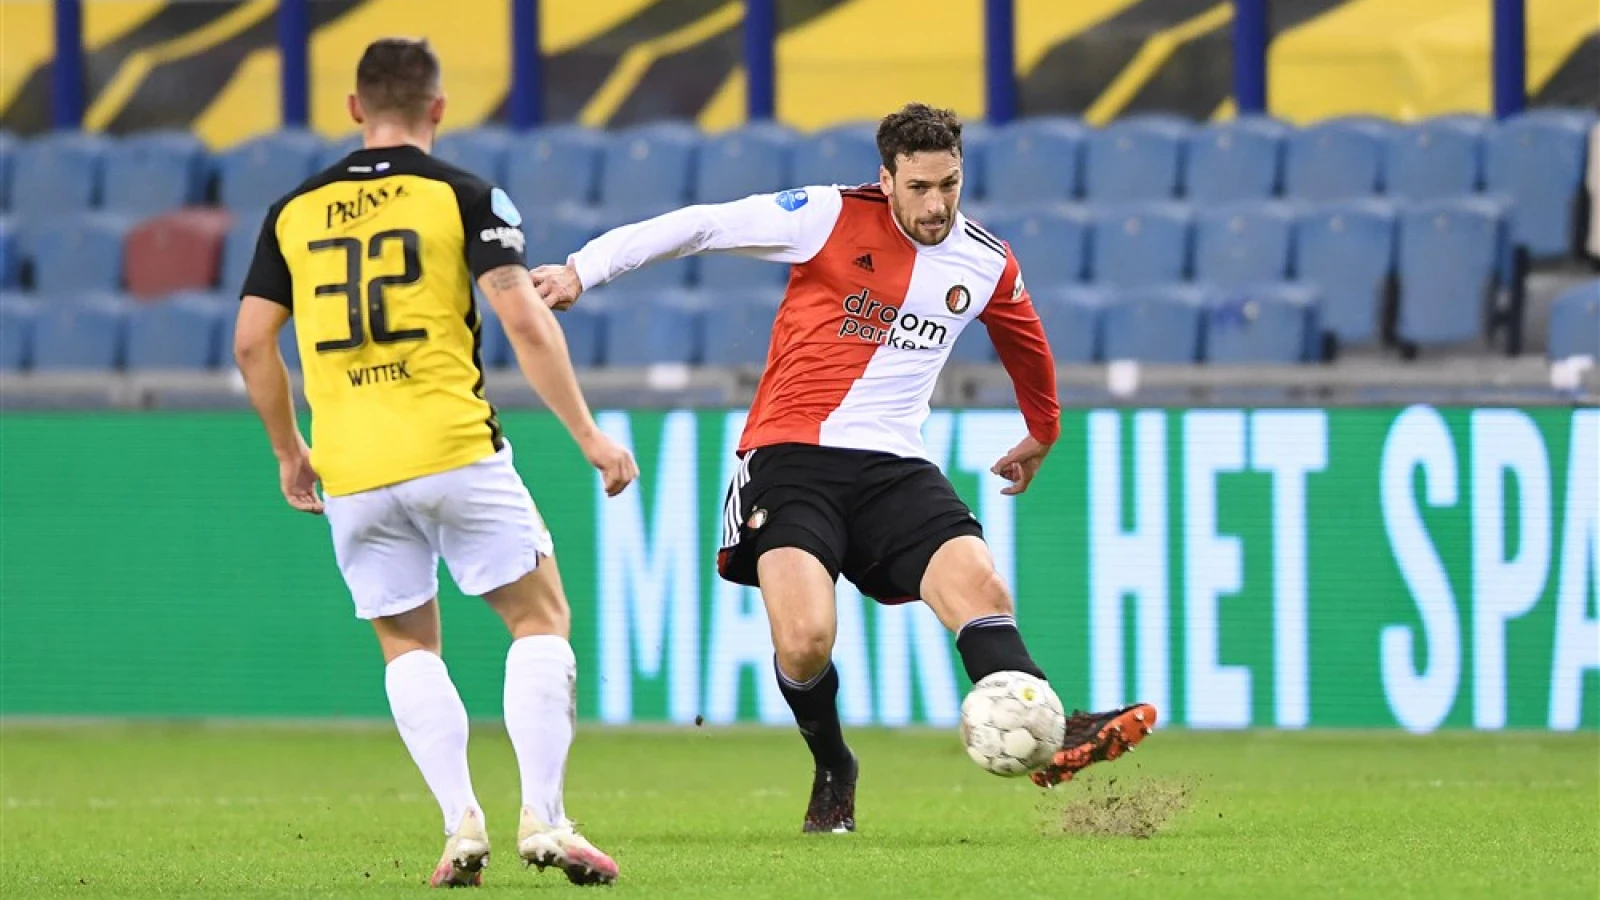 LIVE | Vitesse - Feyenoord 1-0 | Einde wedstrijd